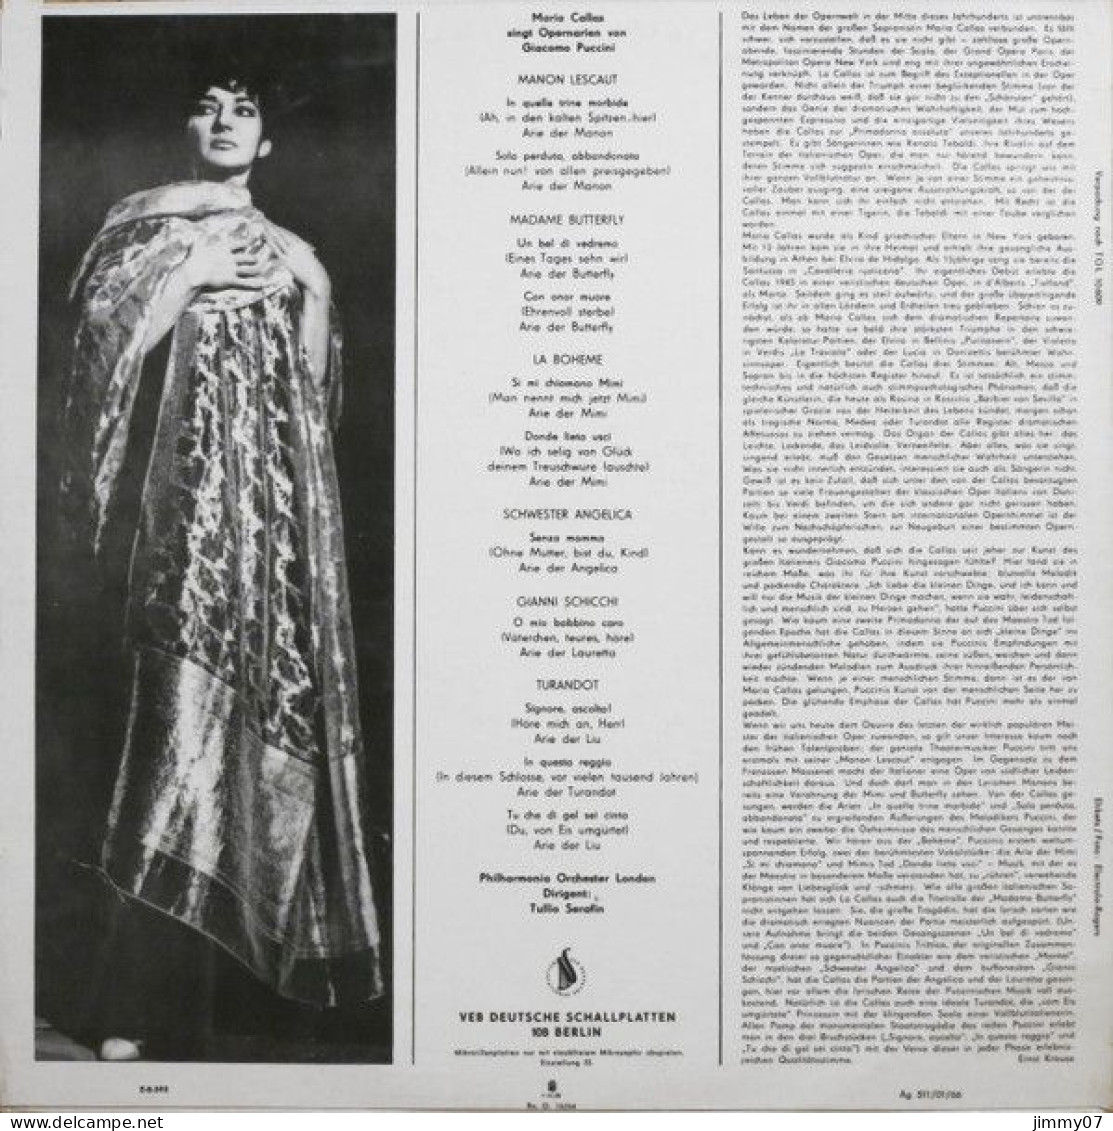 Maria Callas, Giacomo Puccini - Maria Callas Singt Opernarien Von Giacomo Puccini (LP, Mono) - Classique